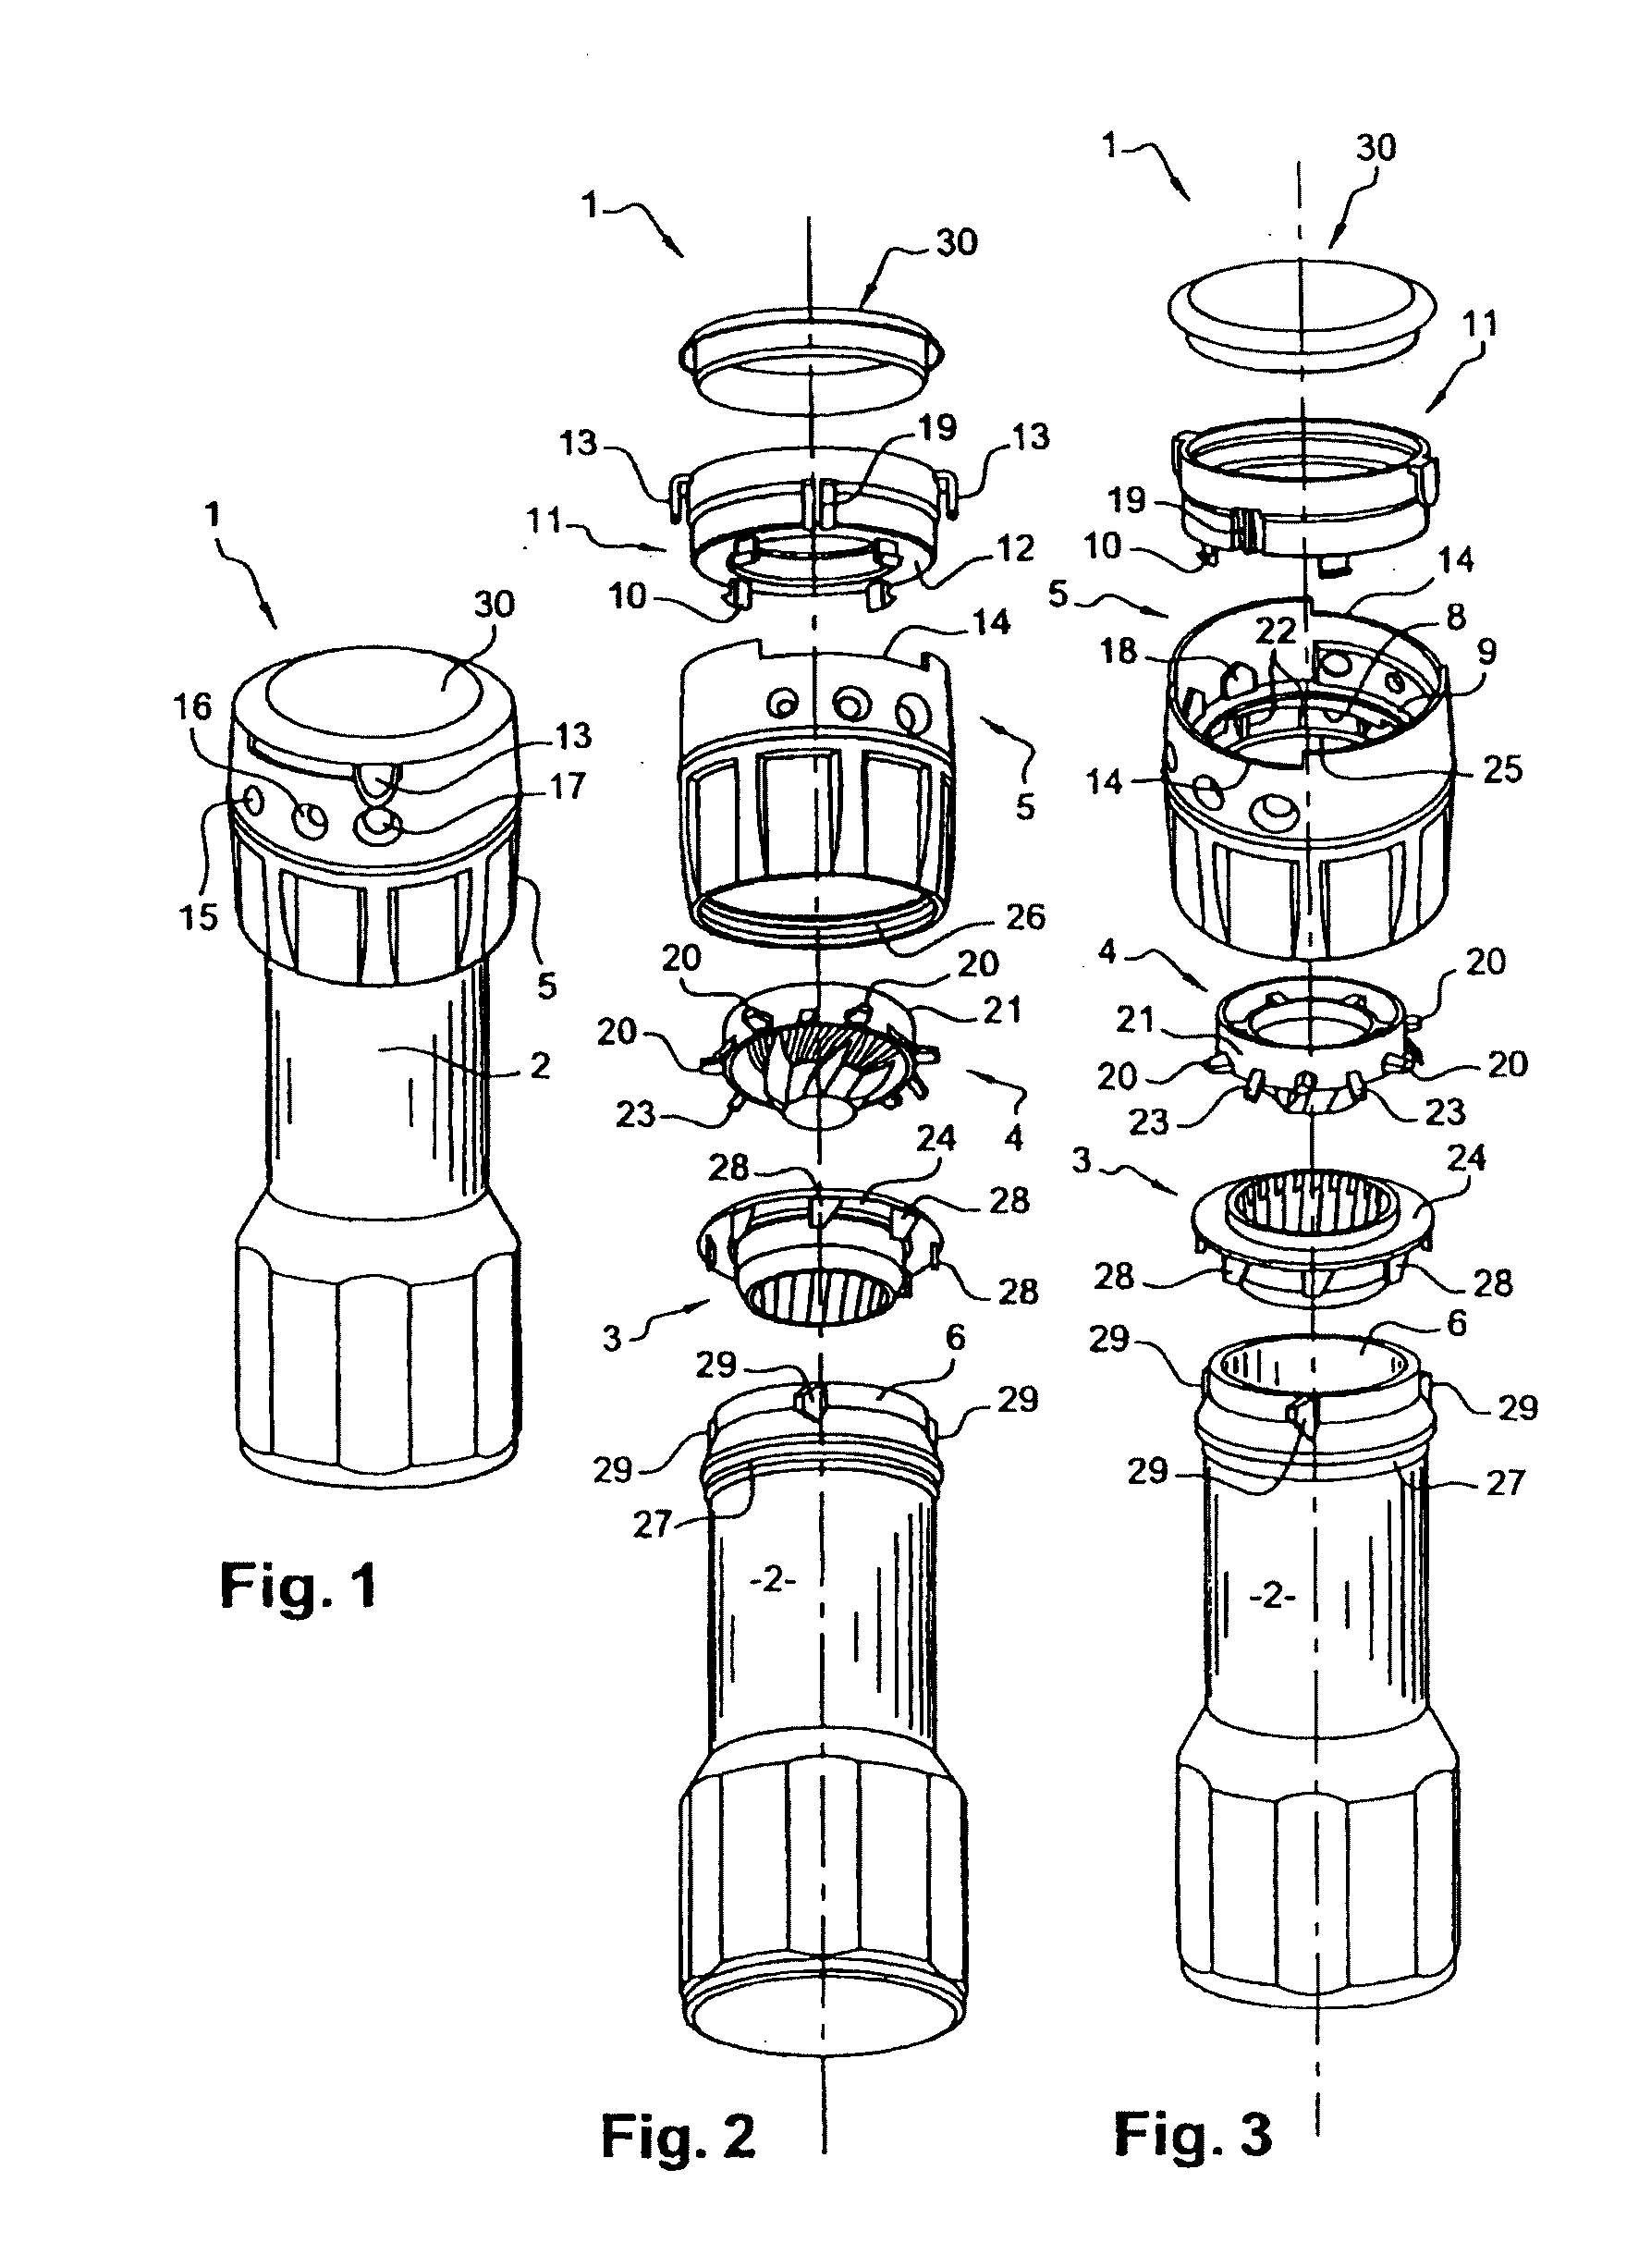 Adjustable grinder and a stator for the adjustable grinder